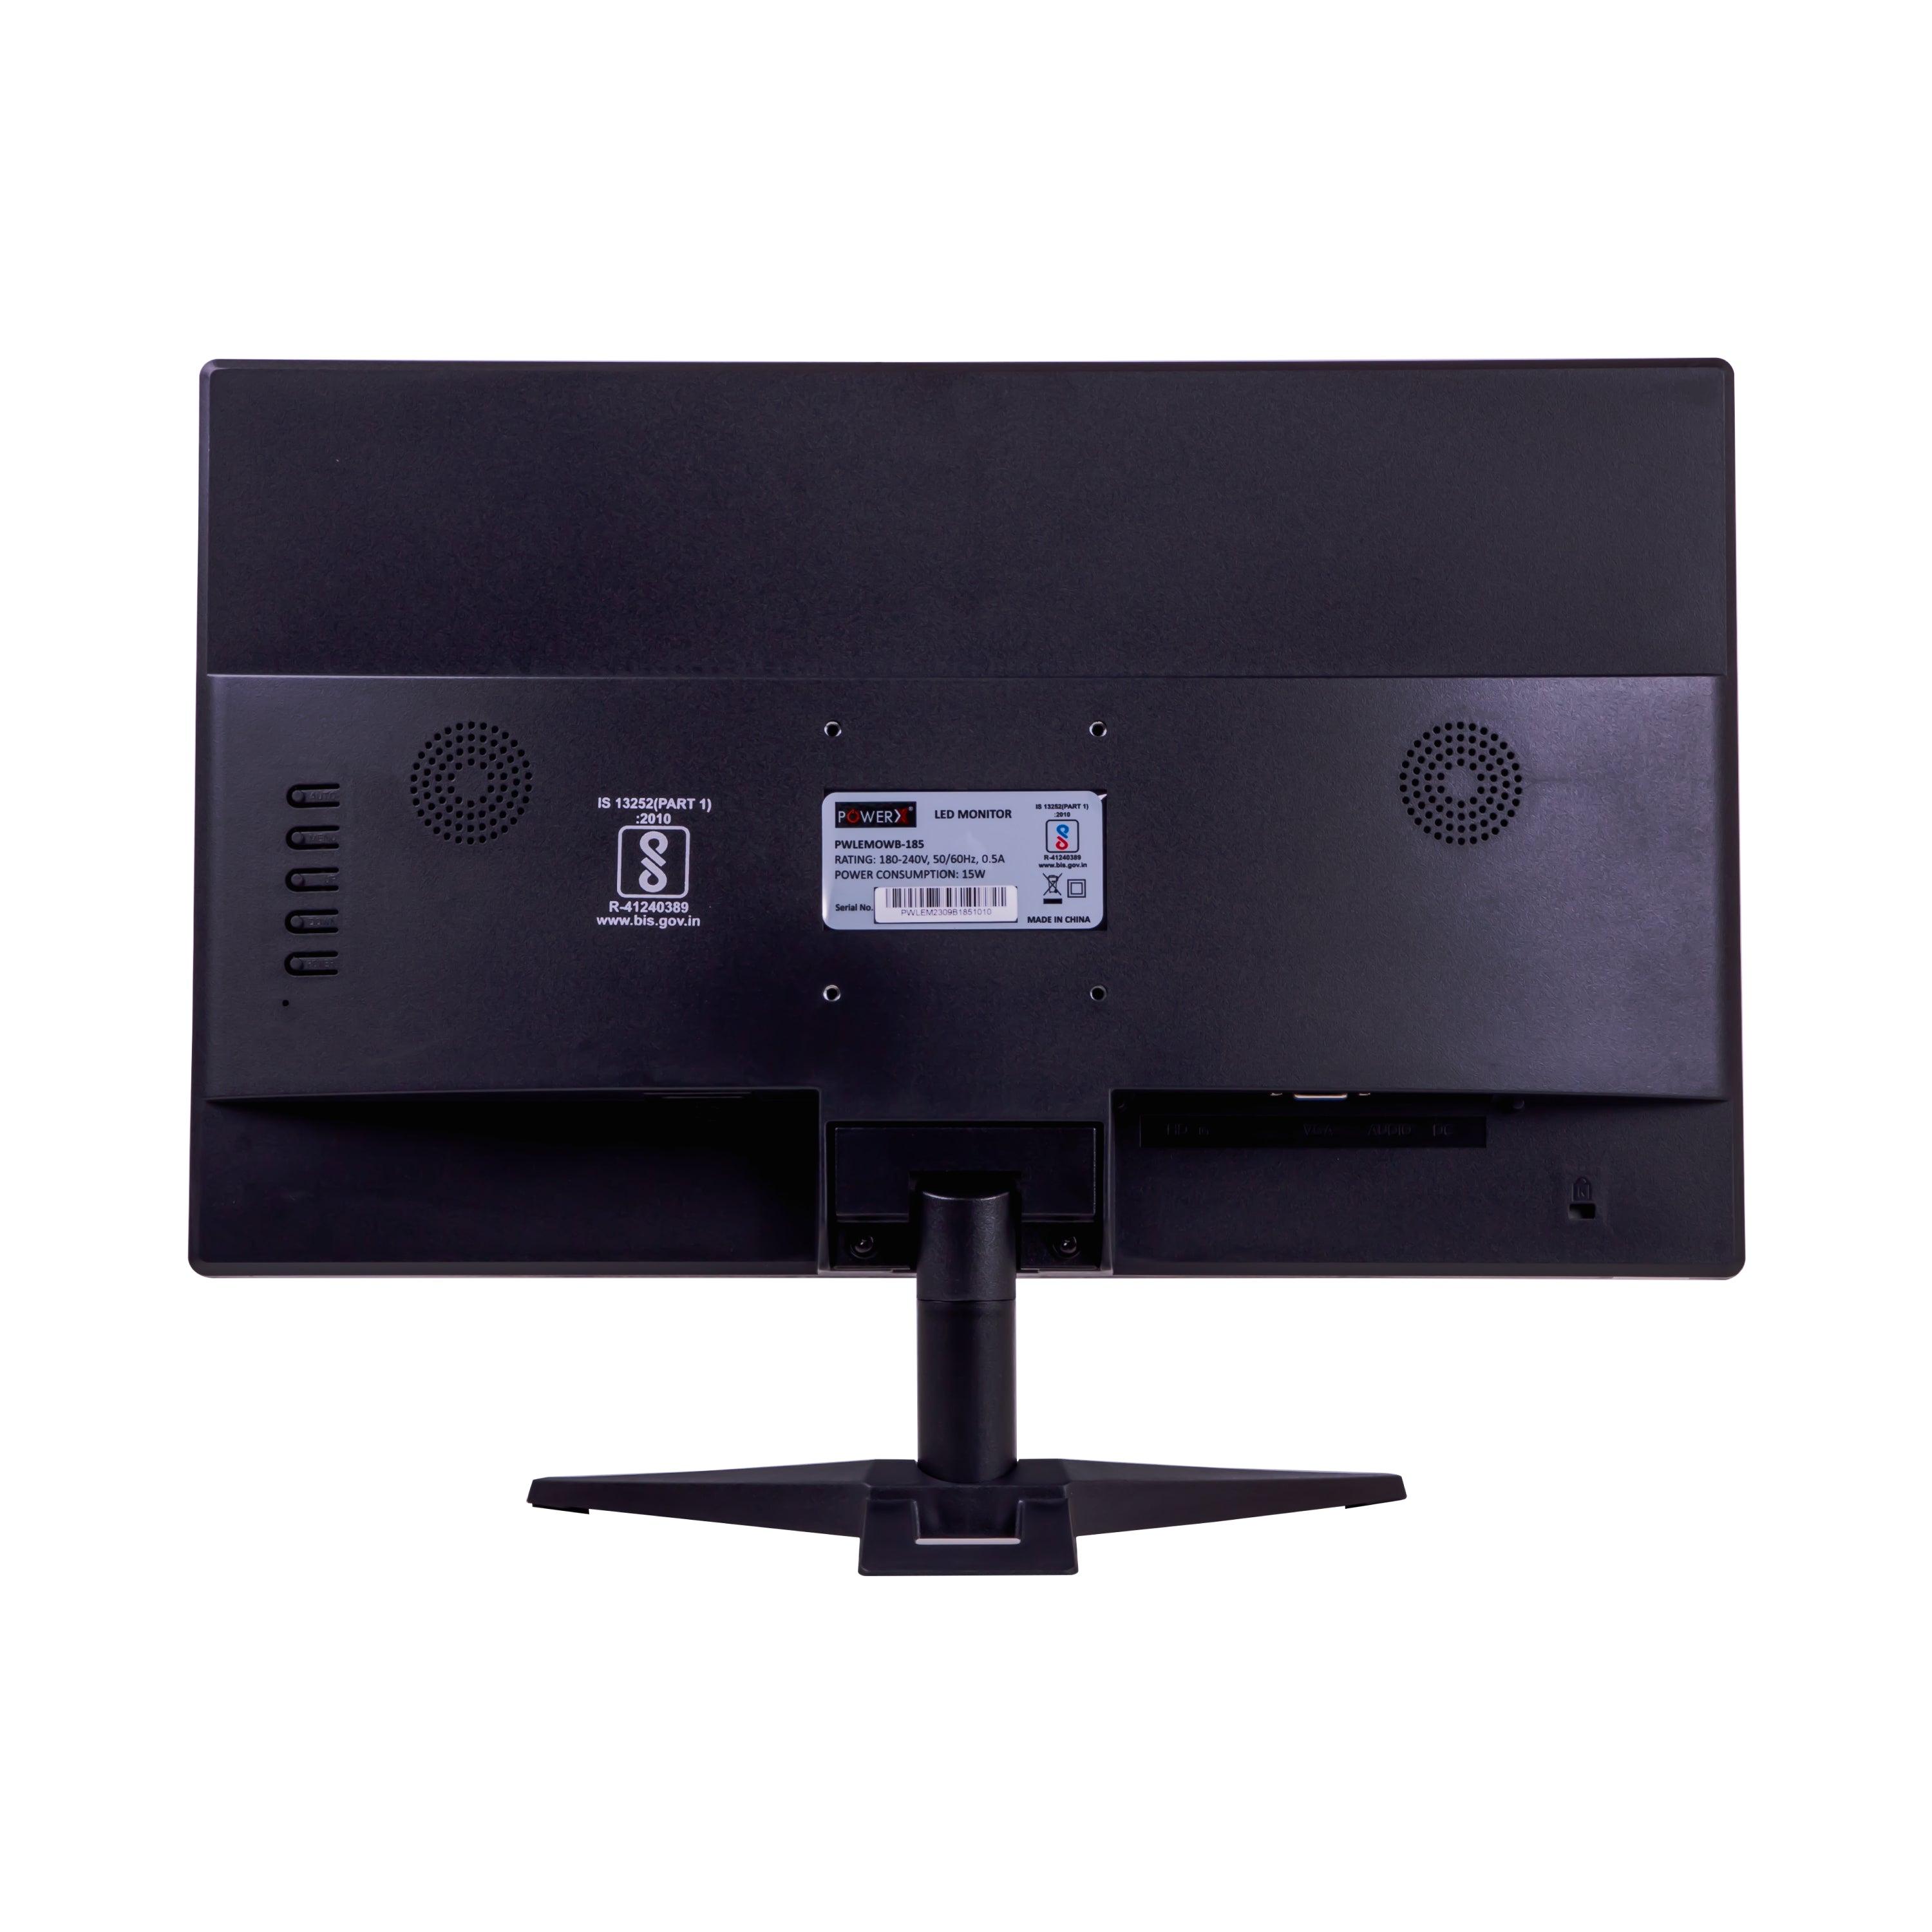 18.5” HD LED MONITOR